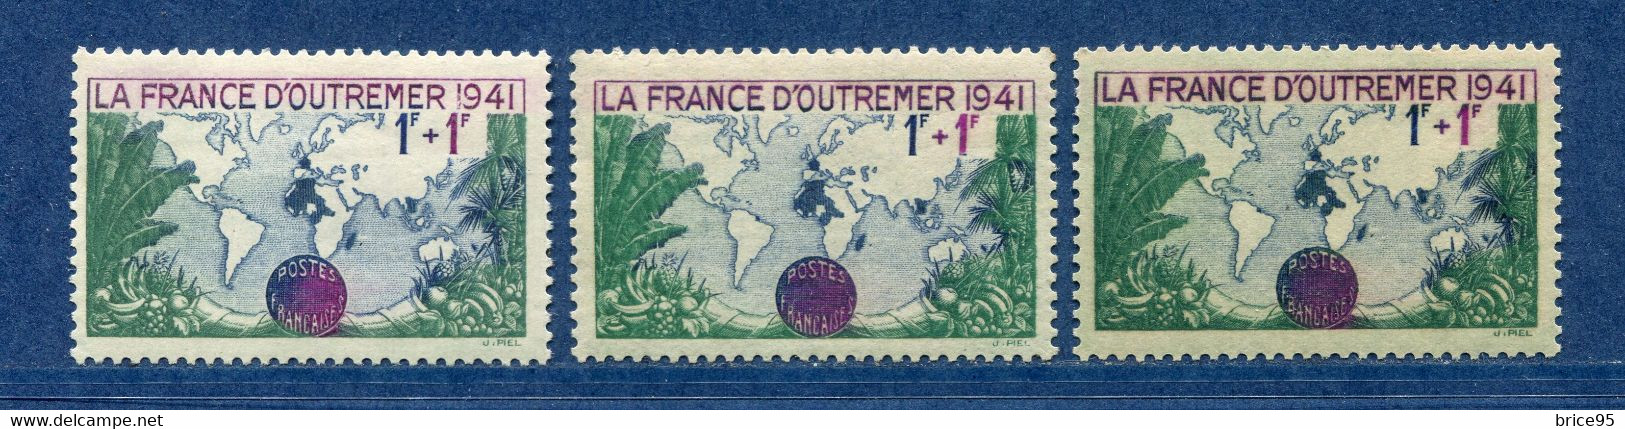 ⭐ France - Variété - YT N° 503 - Couleurs - Pétouille - Neuf Sans Charnière - 1941 ⭐ - Ungebraucht